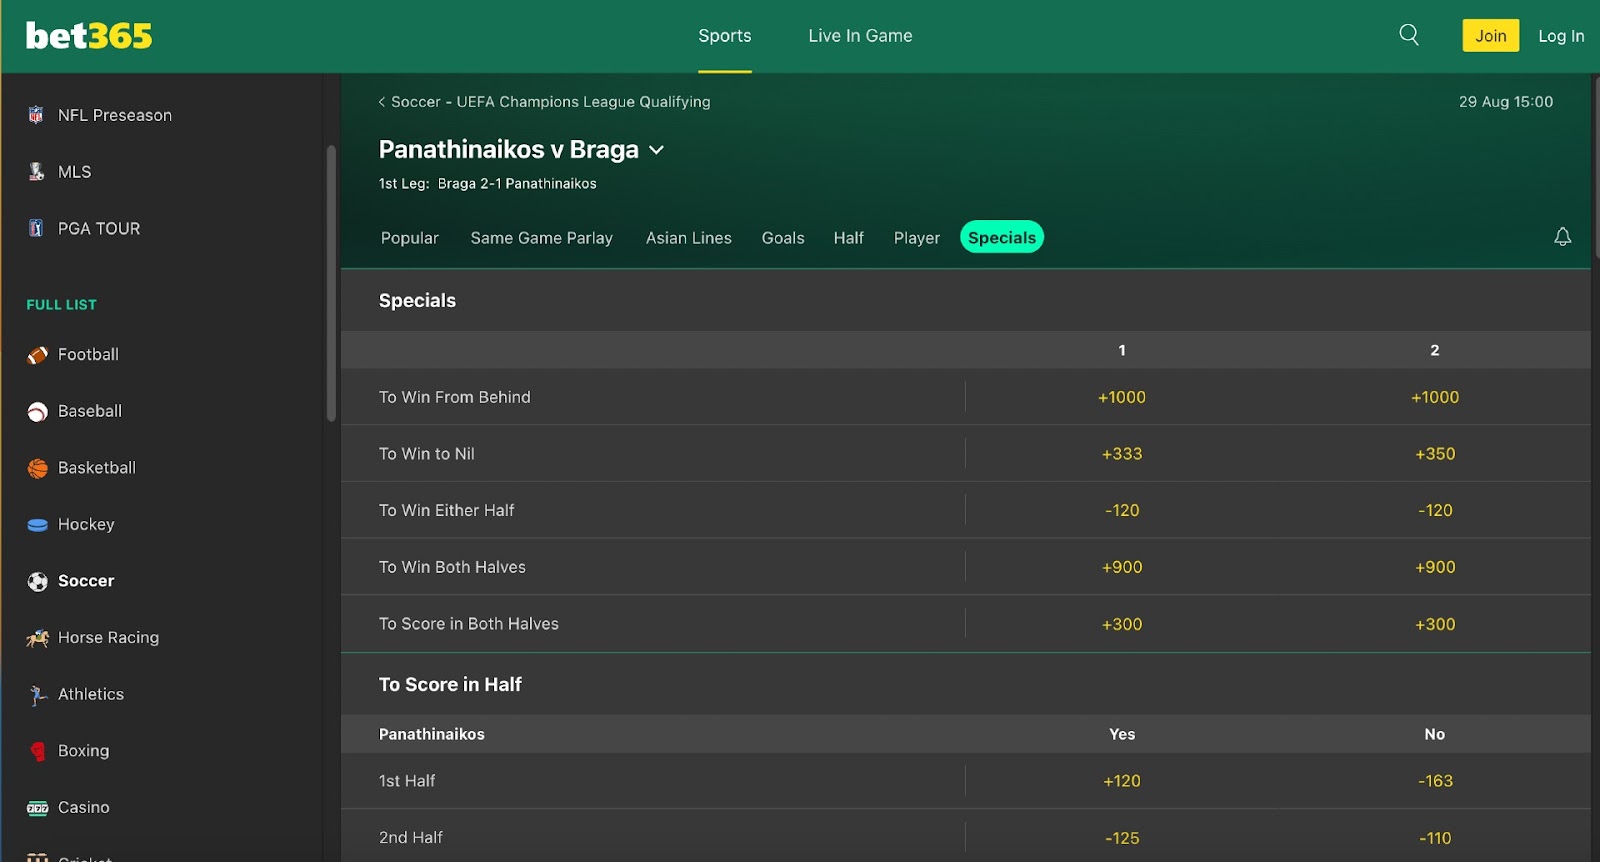 Panathinaikos vs Braga at bet365: To Win to Nil